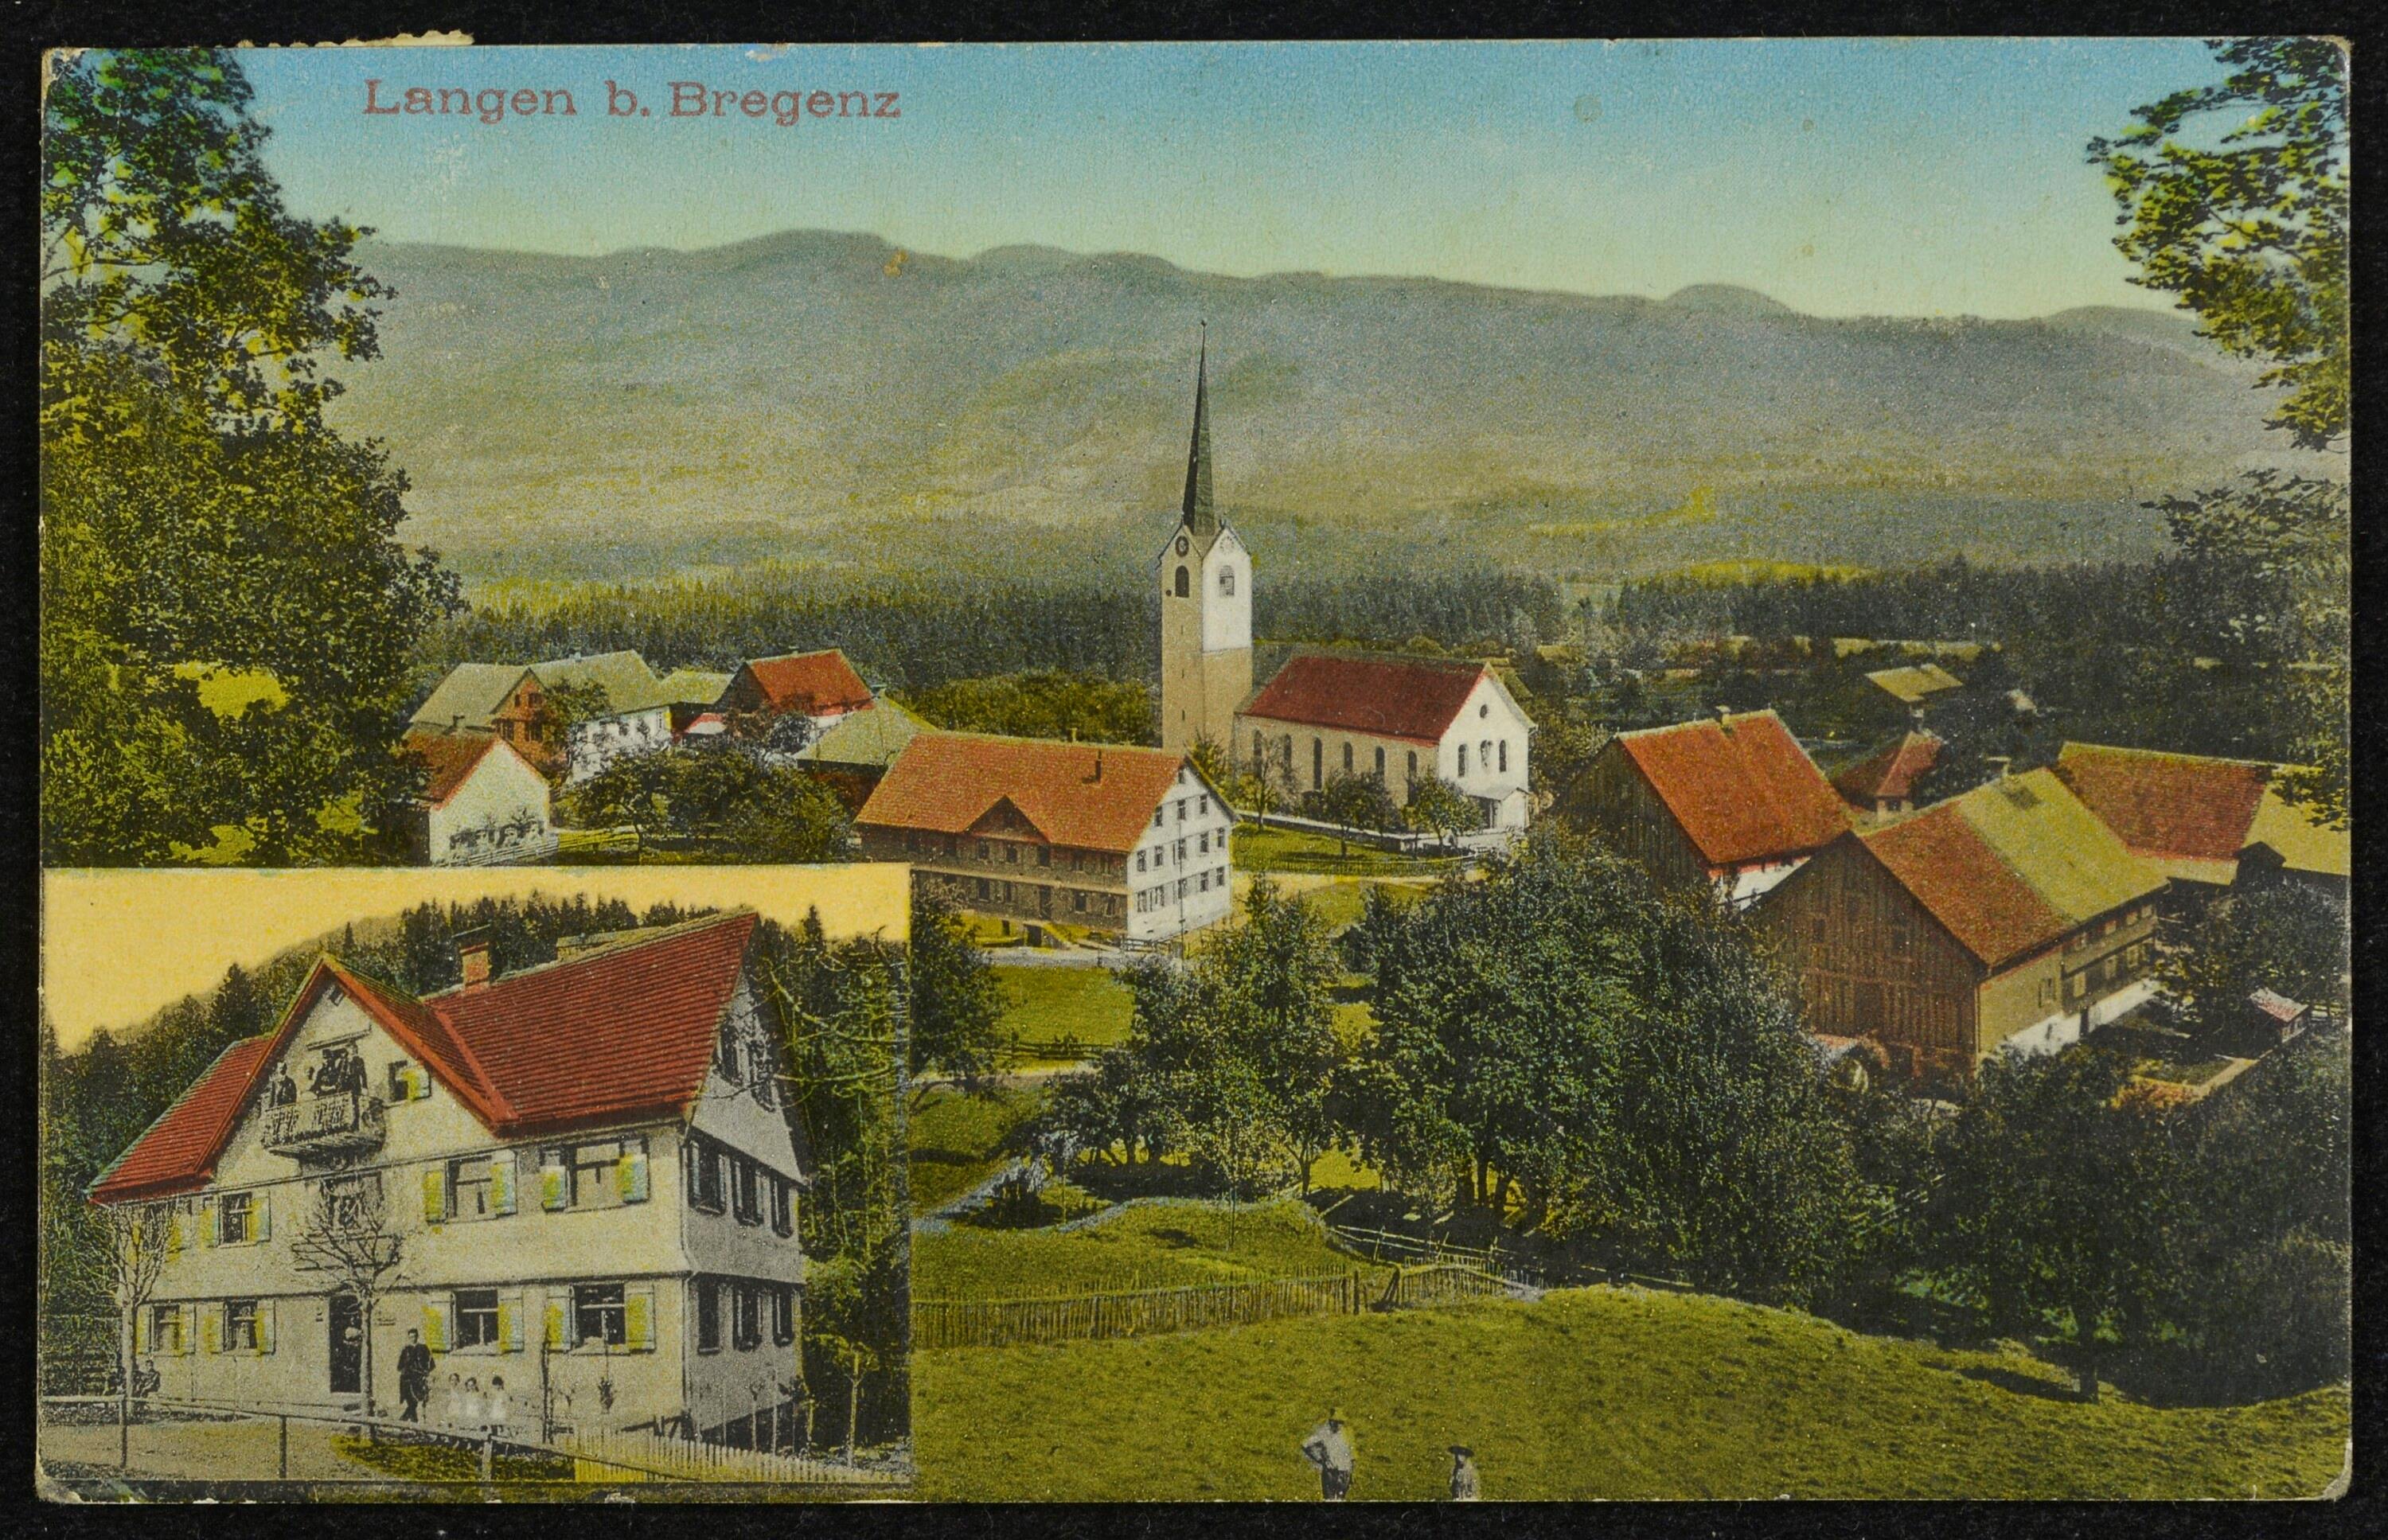 Langen b. Bregenz></div>


    <hr>
    <div class=